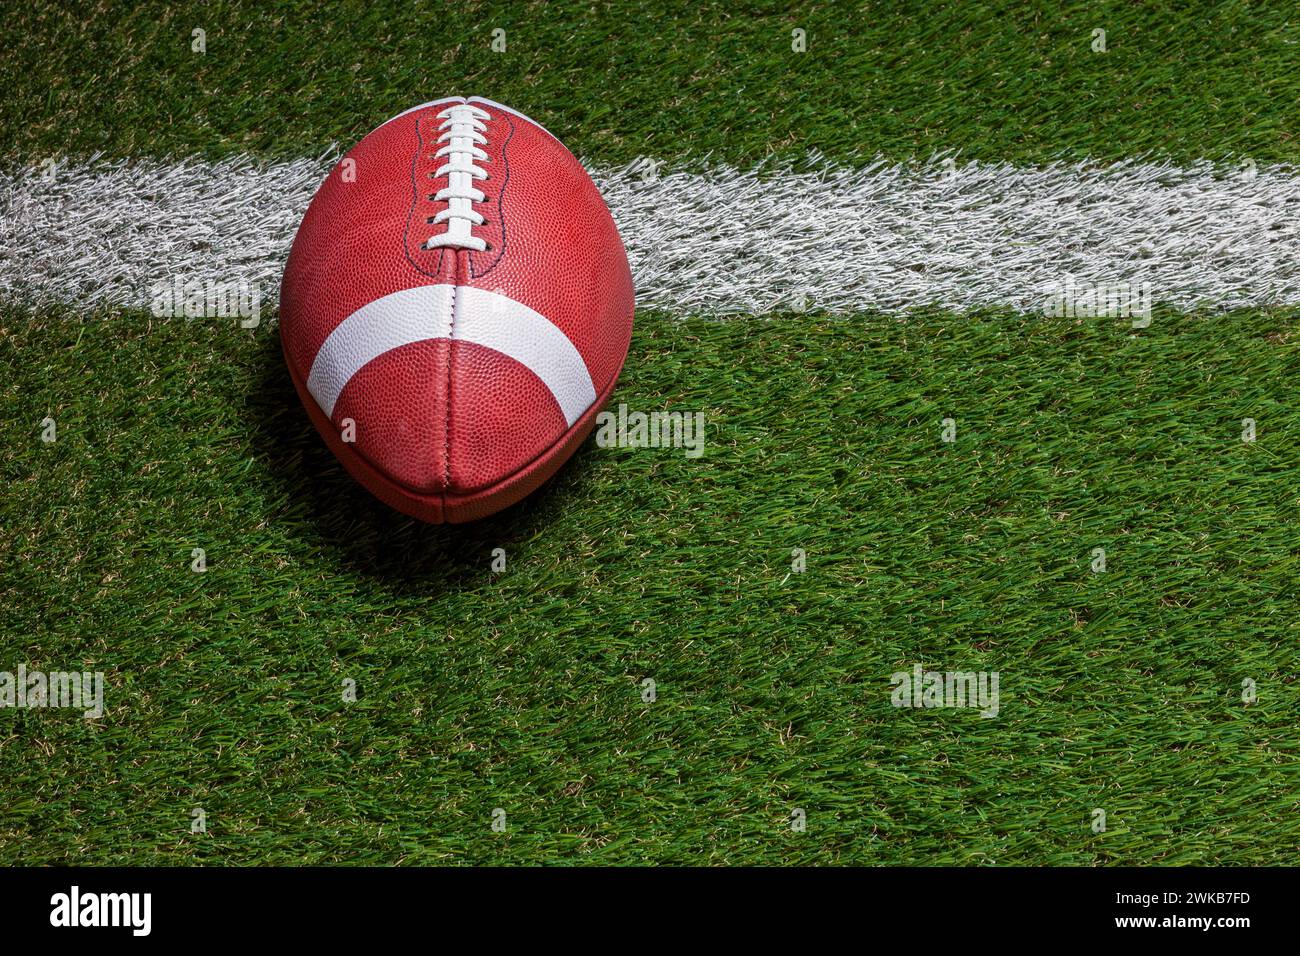 Ballon de football à la ligne de but sur un terrain en herbe vue en angle élevé Banque D'Images